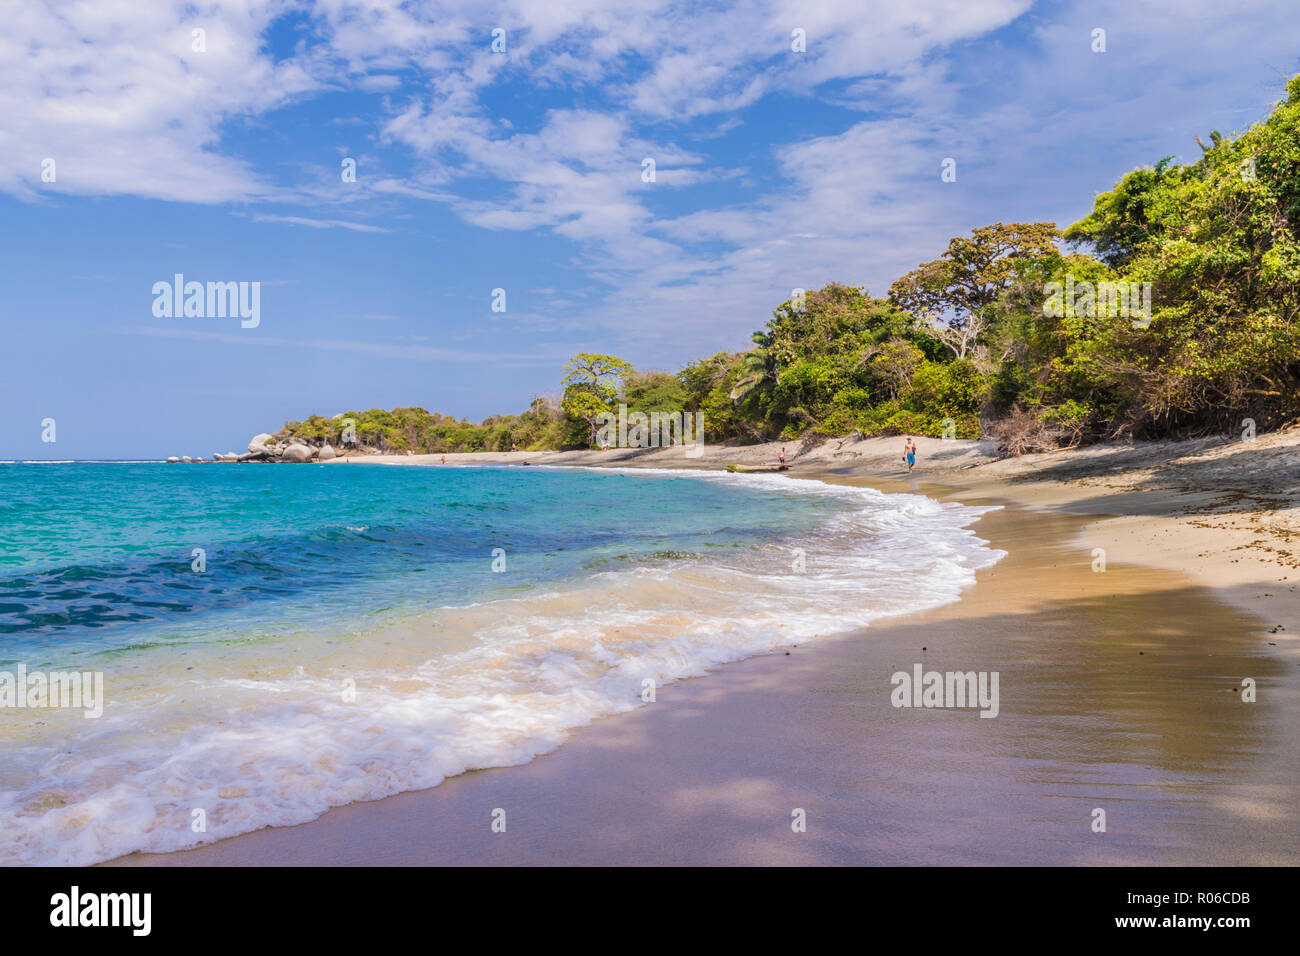 Une vue d'une plage et la mer des Caraïbes dans le Parc National Tayrona en Colombie, Amérique du Sud Banque D'Images